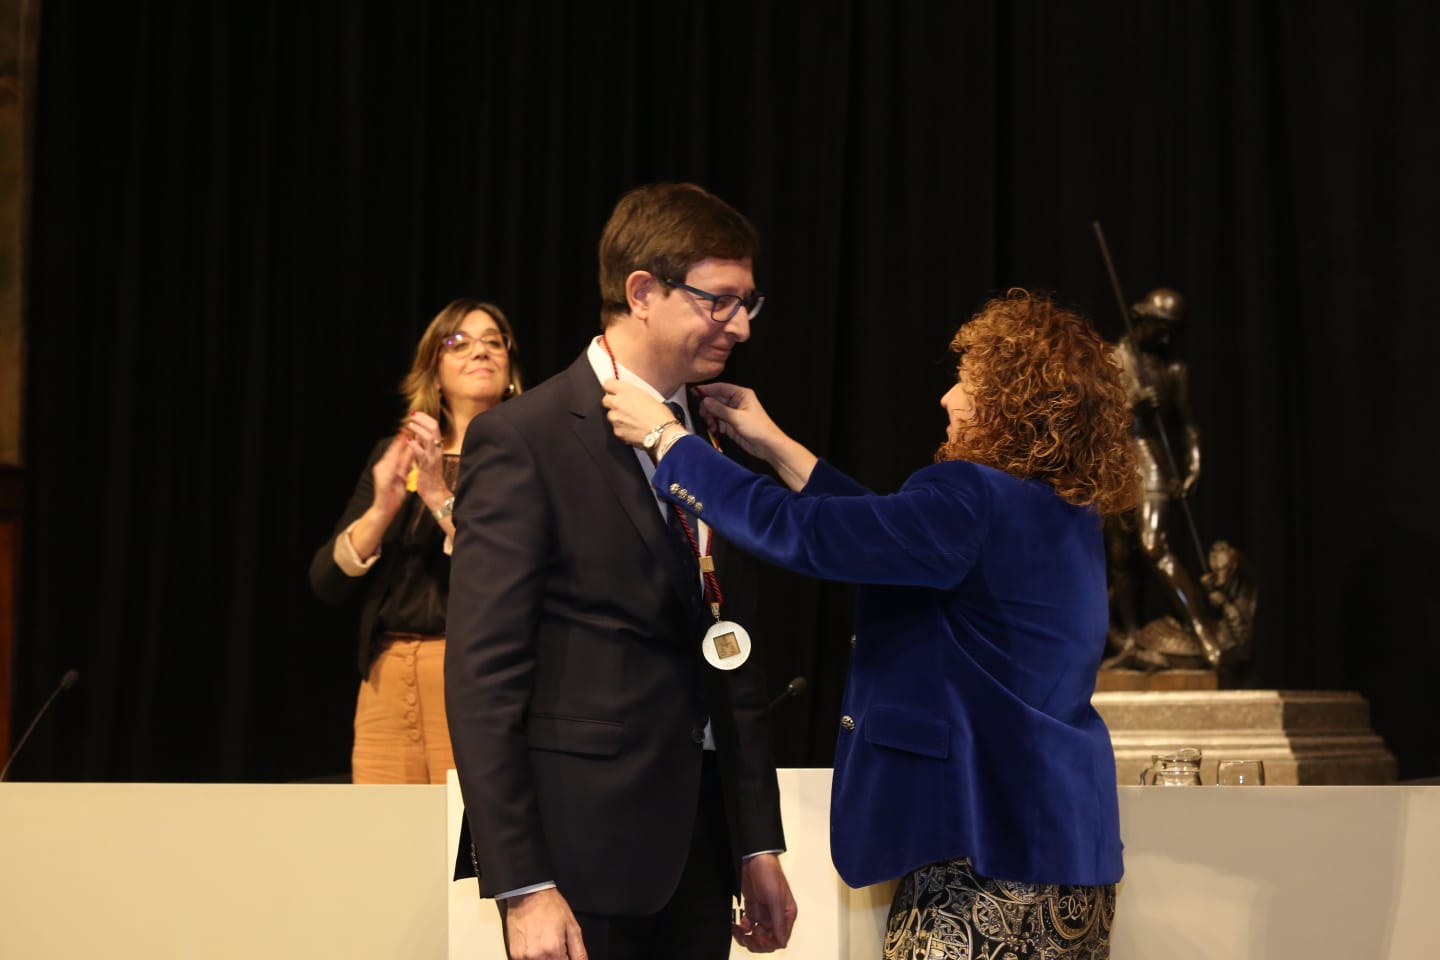 La consellera Capella entrega el Premi Justícia 2018 a Carles Mundó